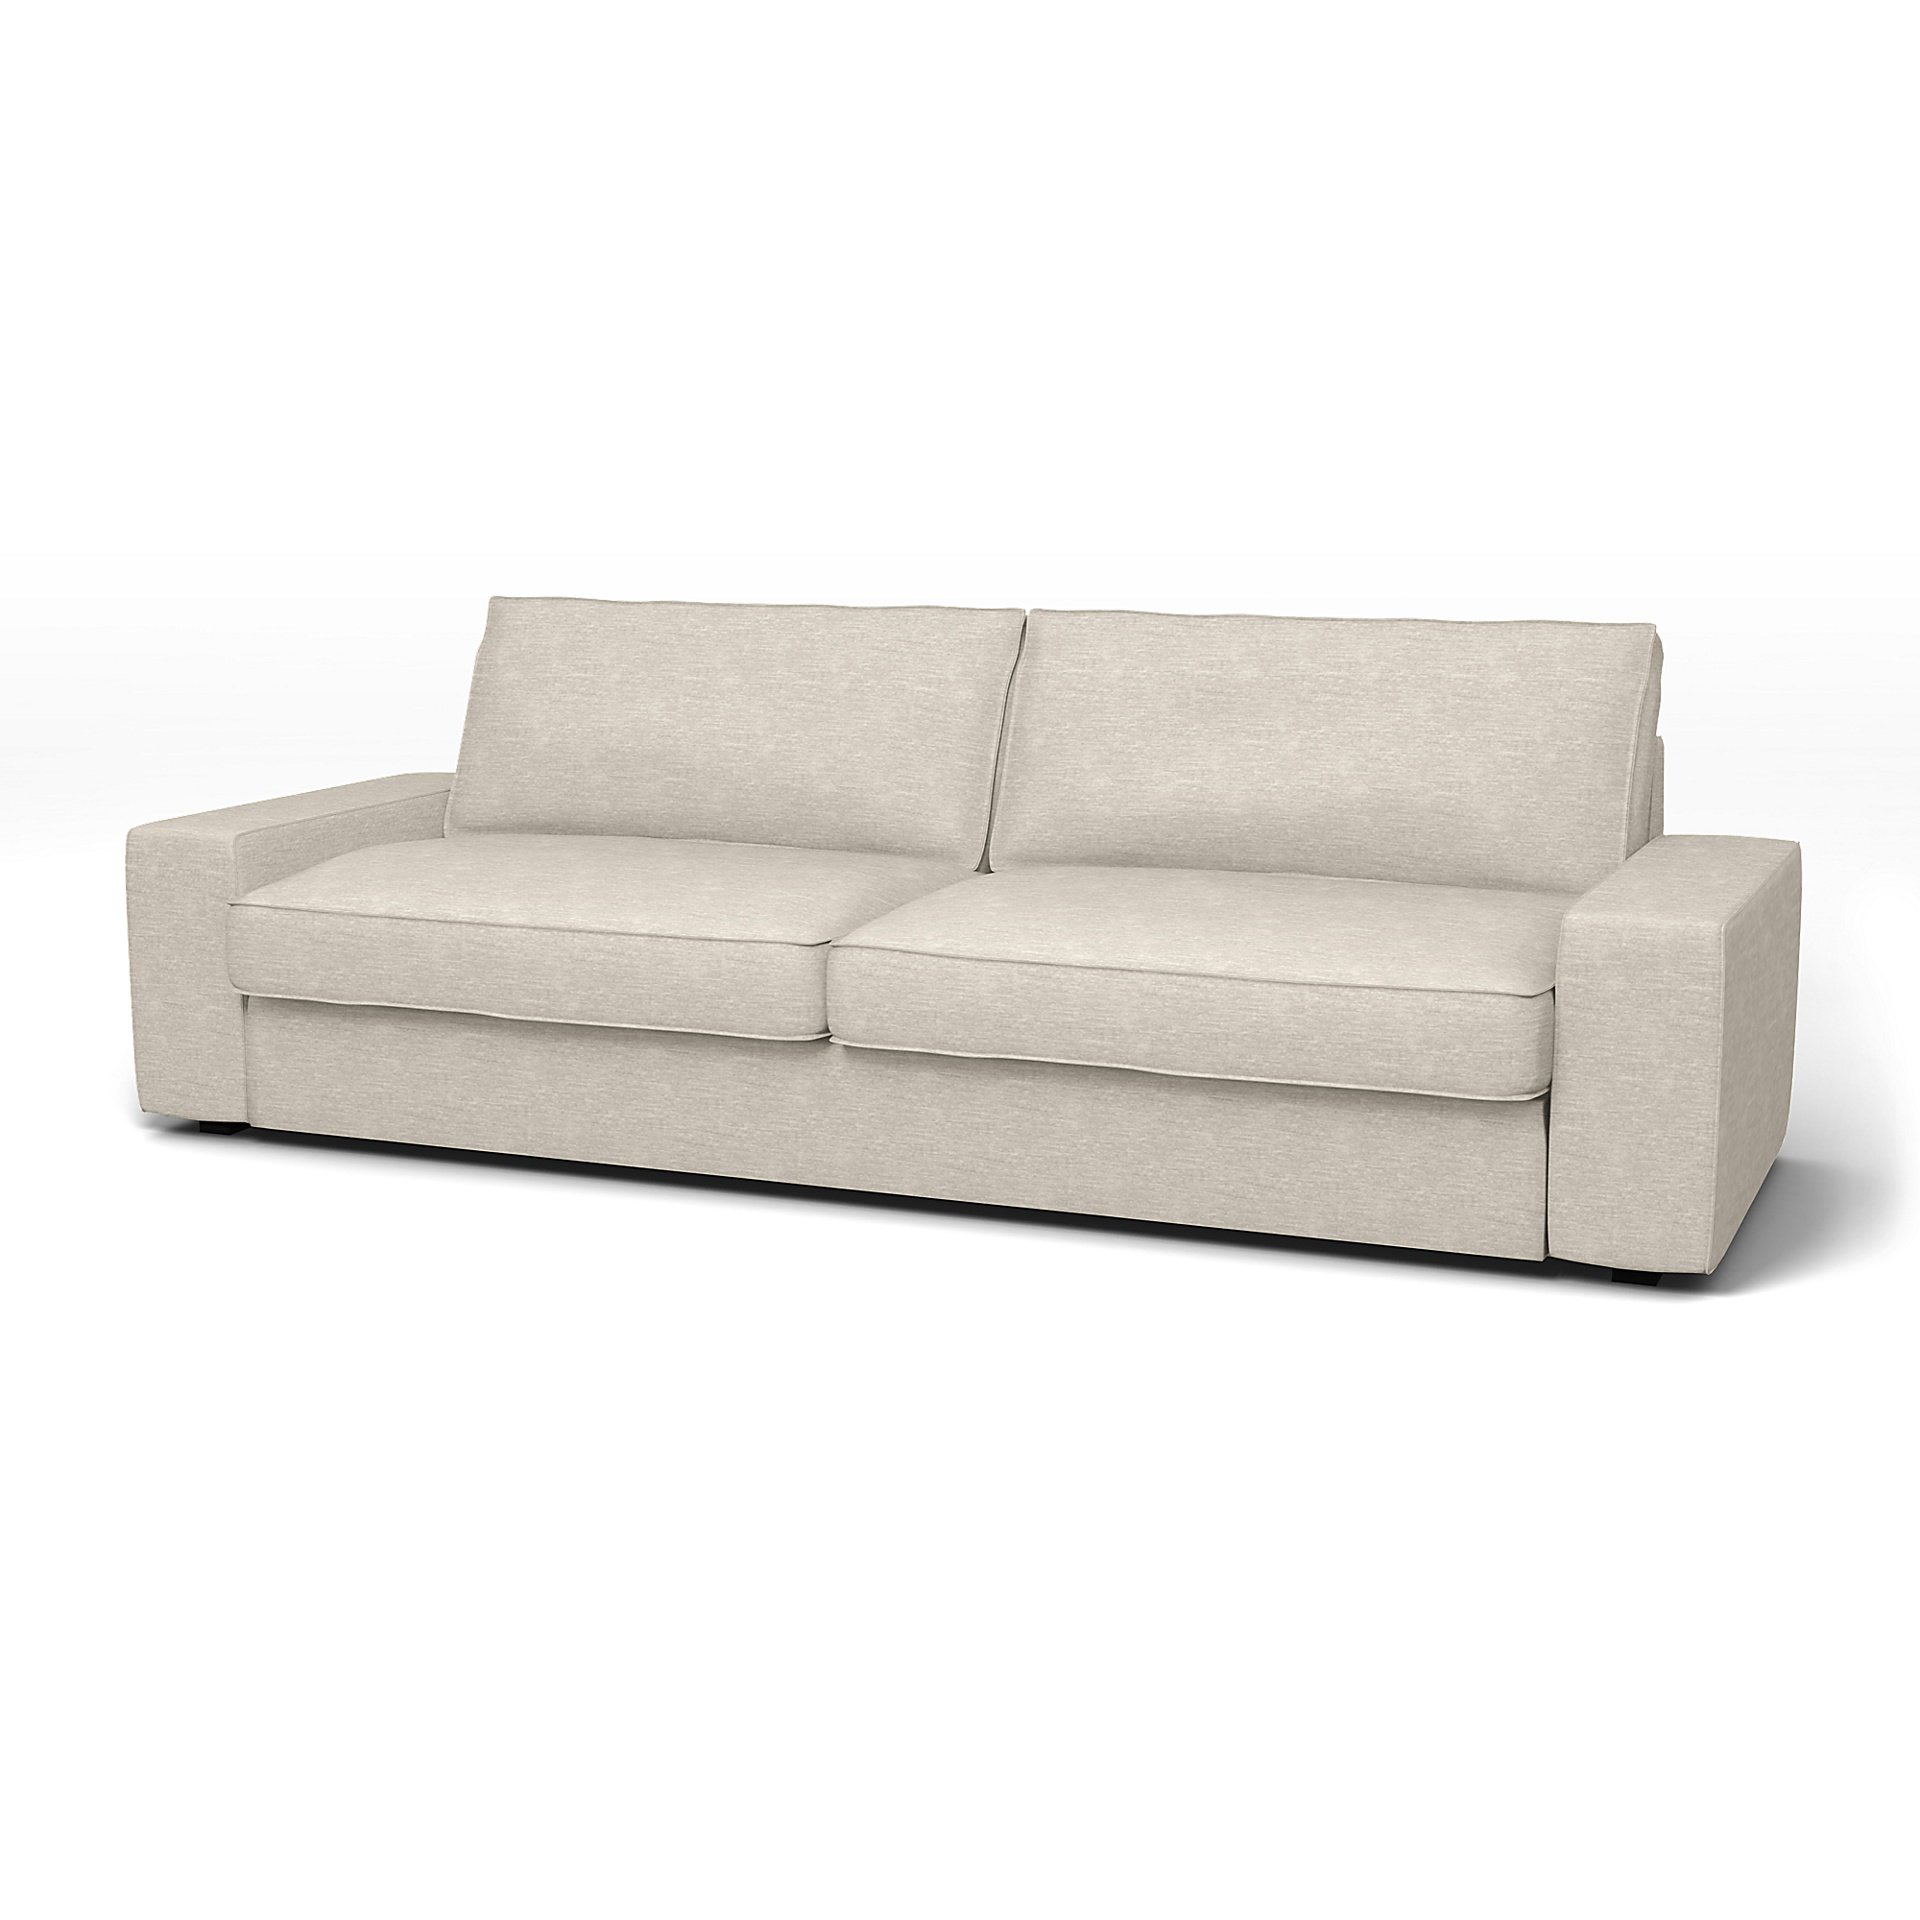 IKEA - Kivik Sofa Bed Cover, Natural White, Velvet - Bemz